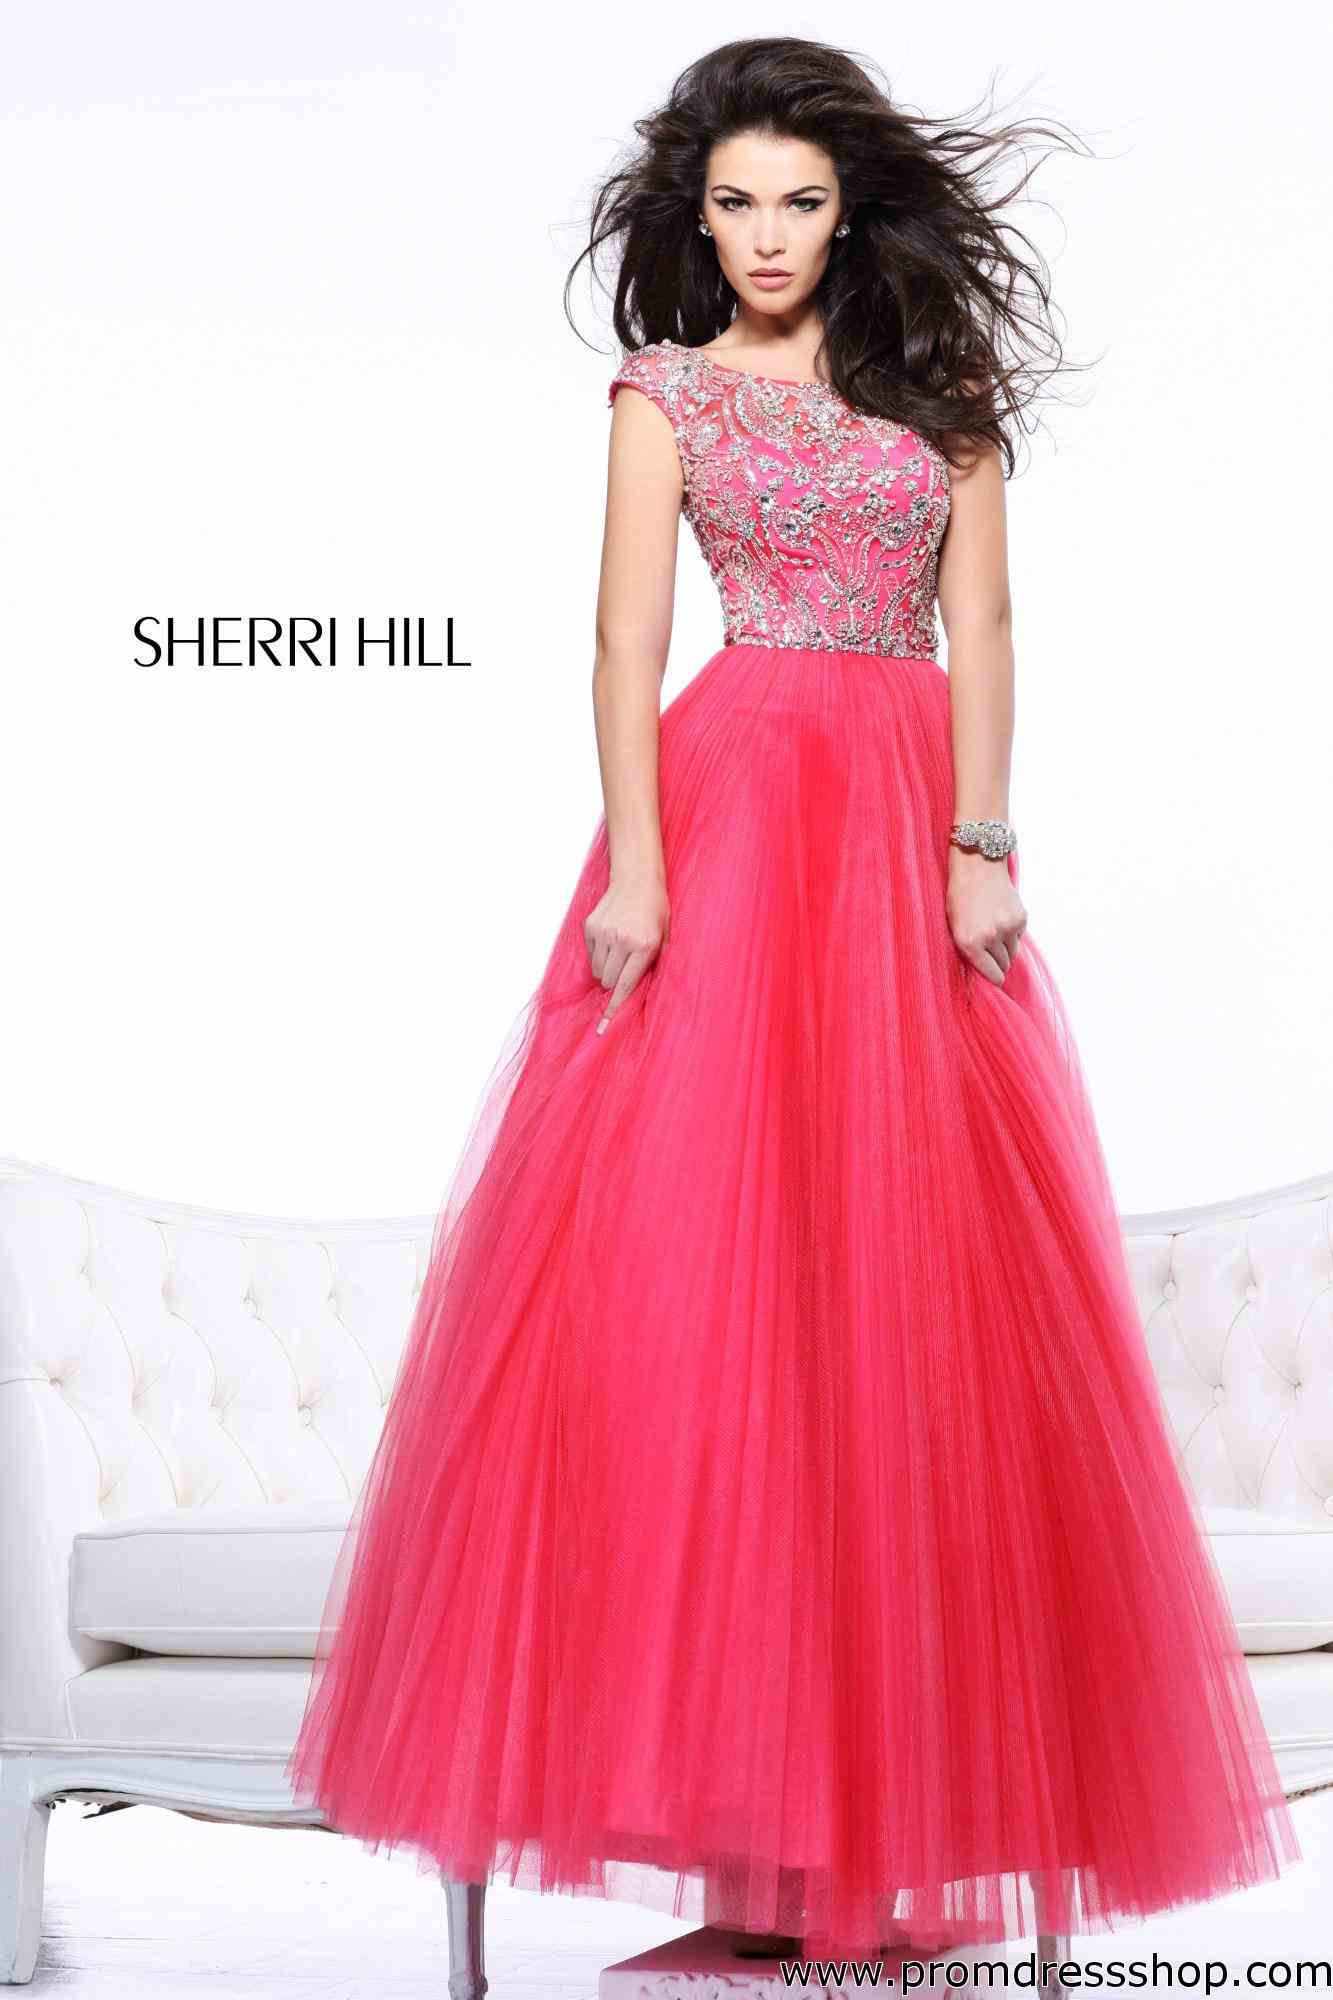 Sherri Hill Dress 2984 at Prom Dress Shop